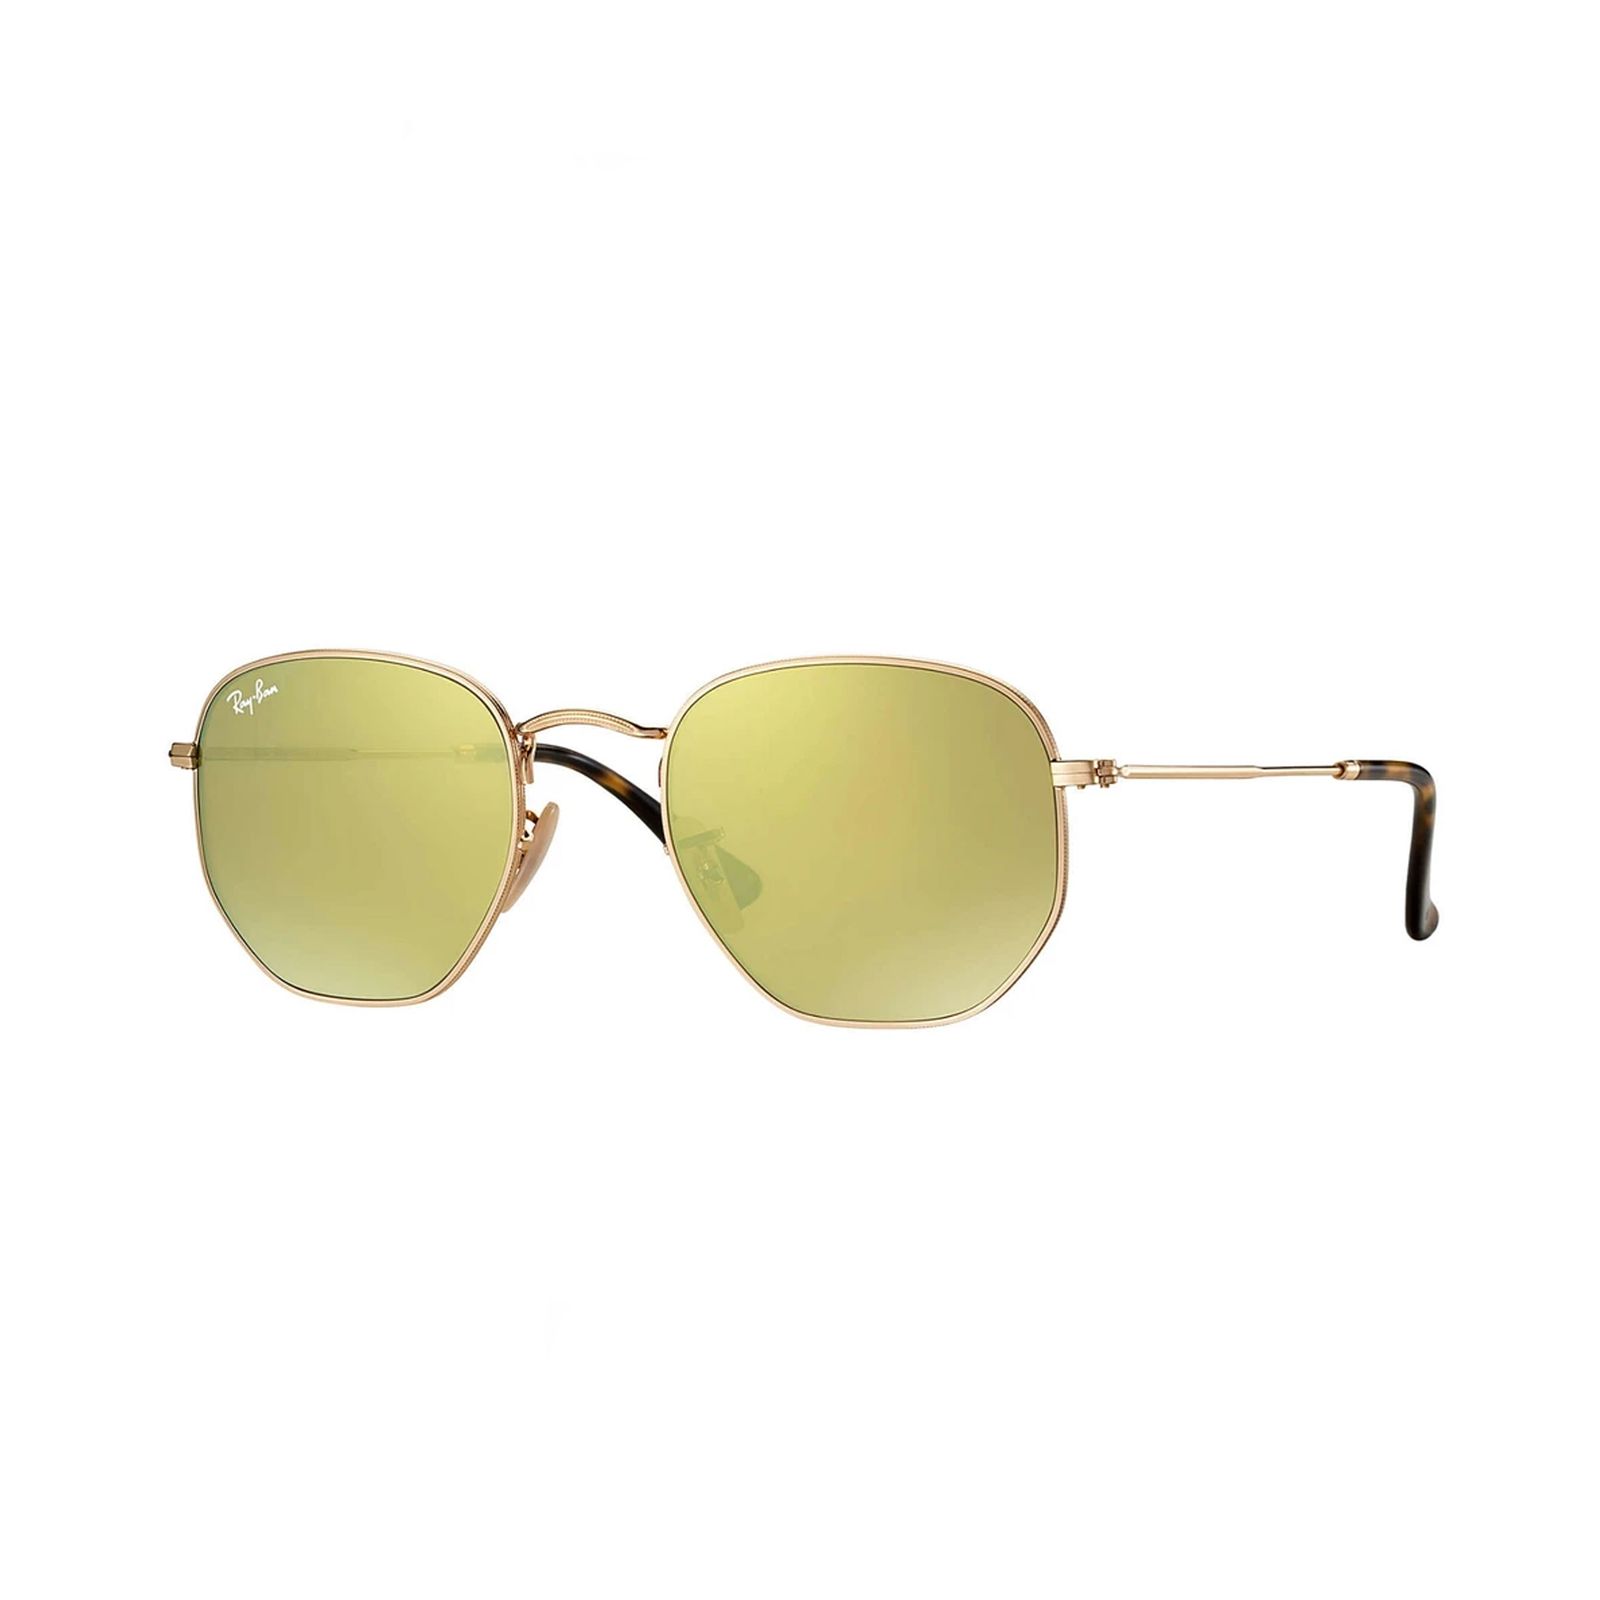 عینک آفتابی ری بن مدل 3548-001/93-54 - طلایی - 3